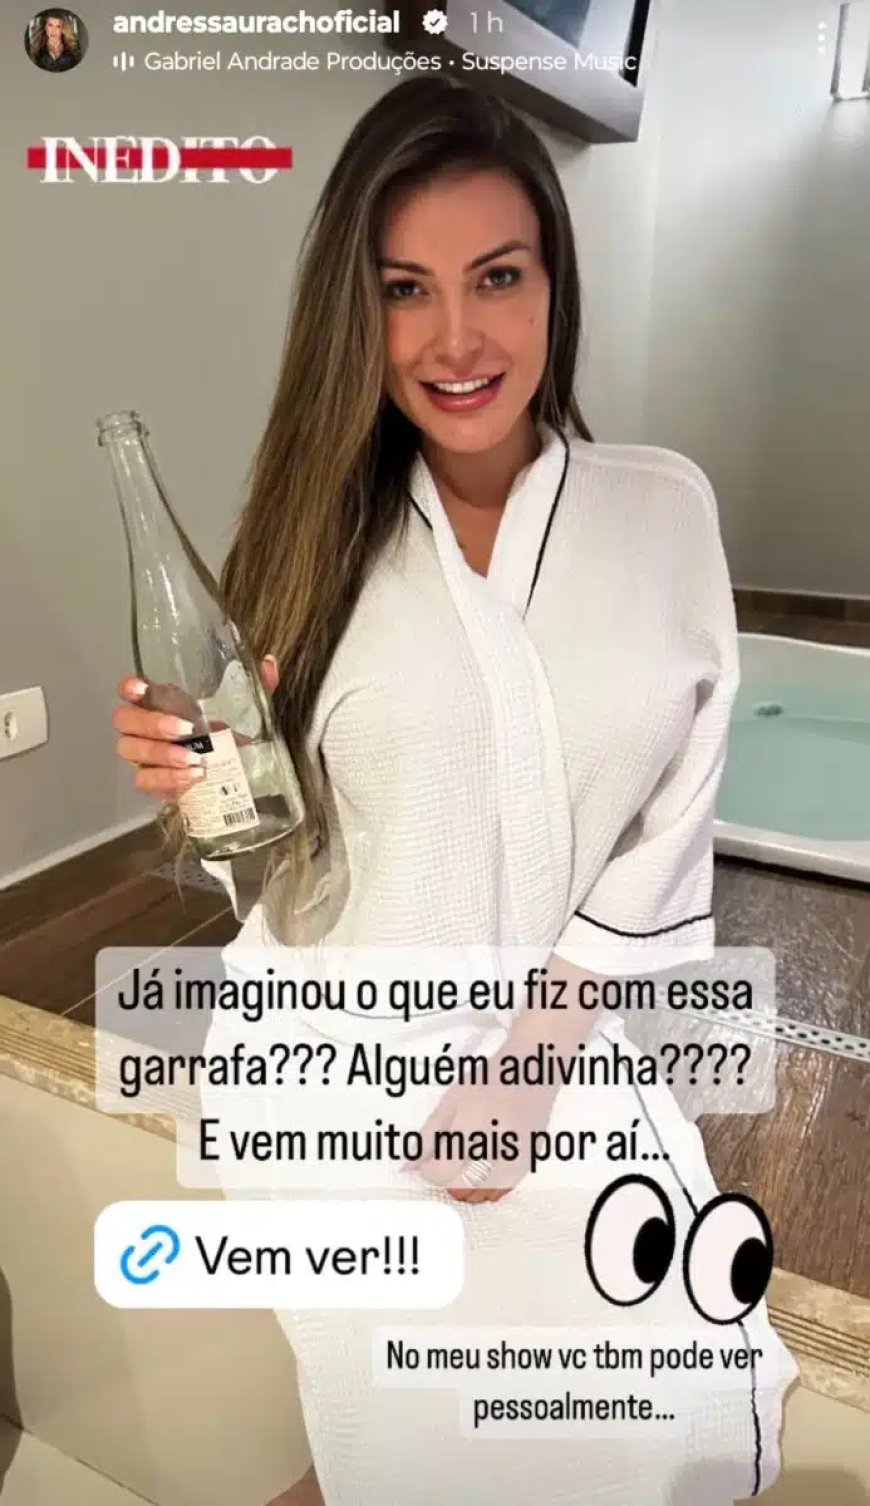 Andressa Urach causa polêmica ao exibir garrafa em vídeo de conteúdo adulto